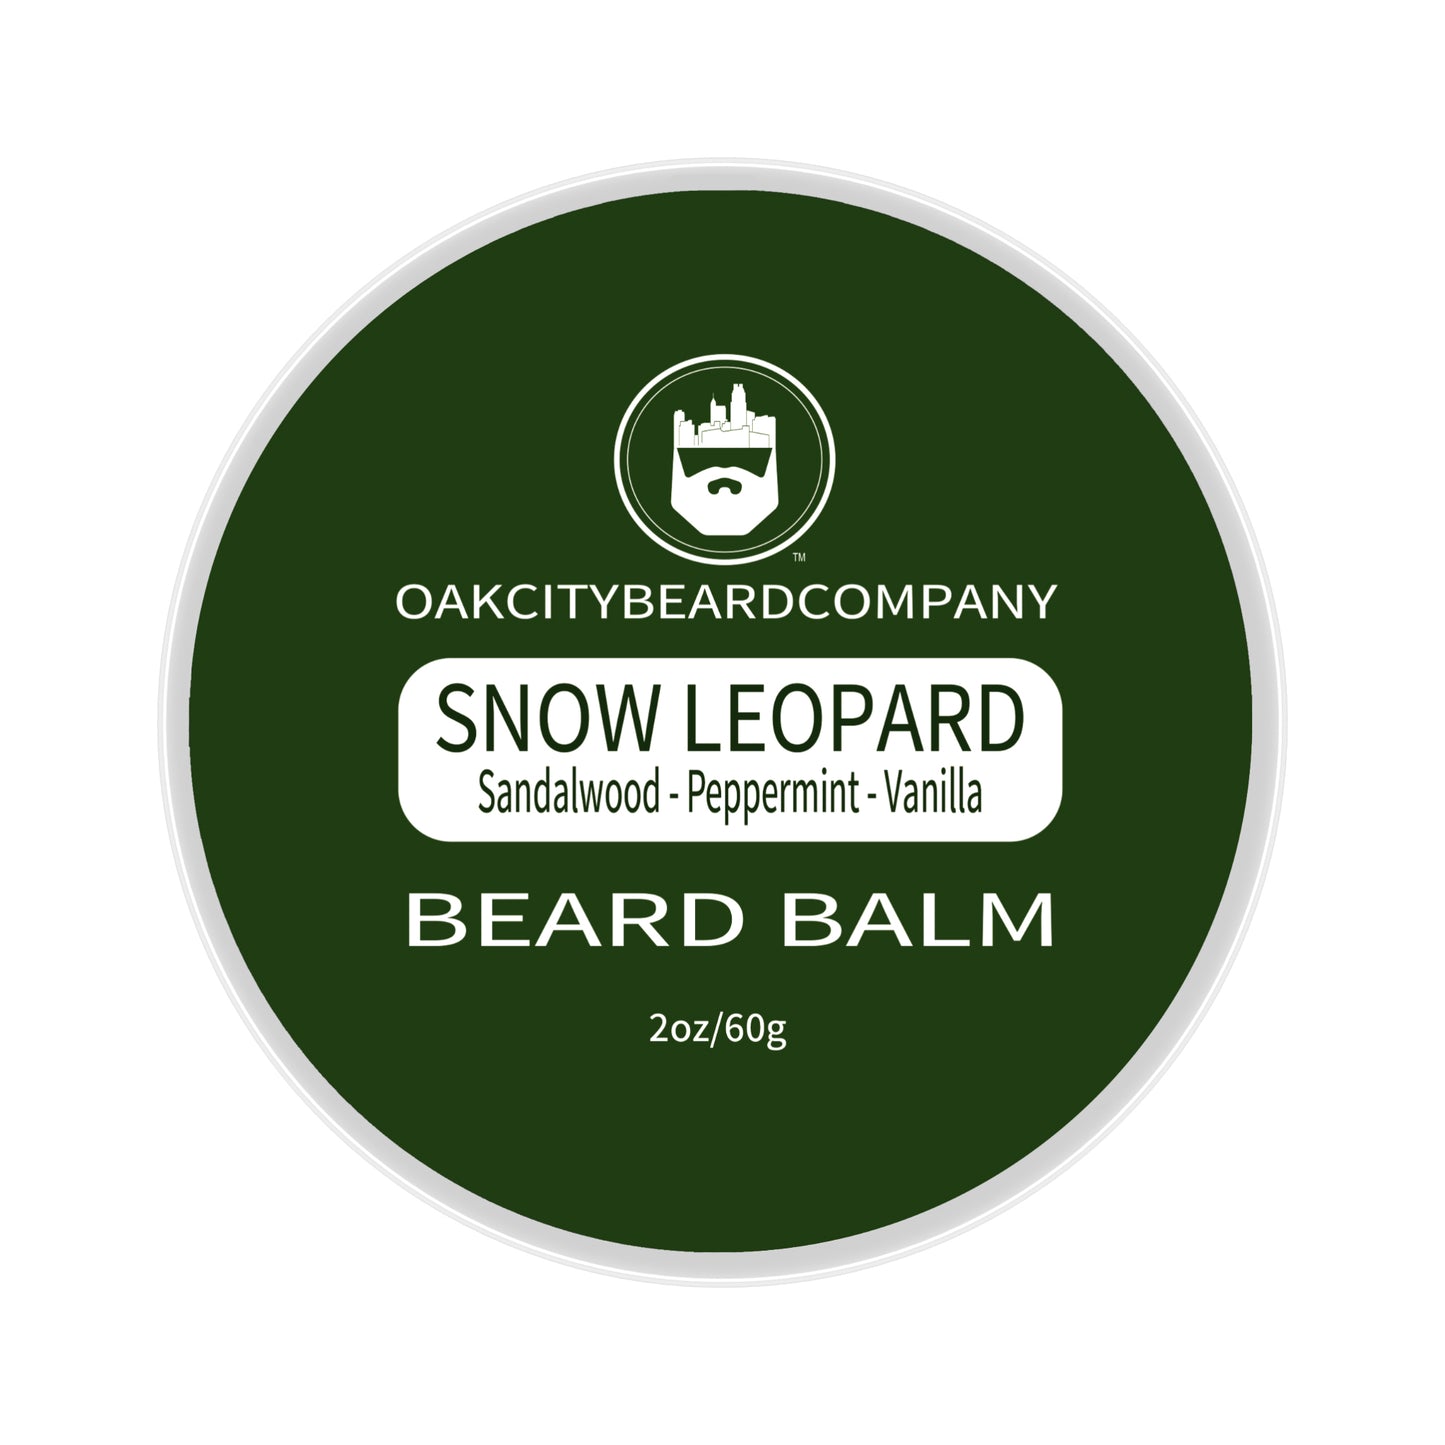 Snow Leopard (Beard Balm) by Oak City Beard Company